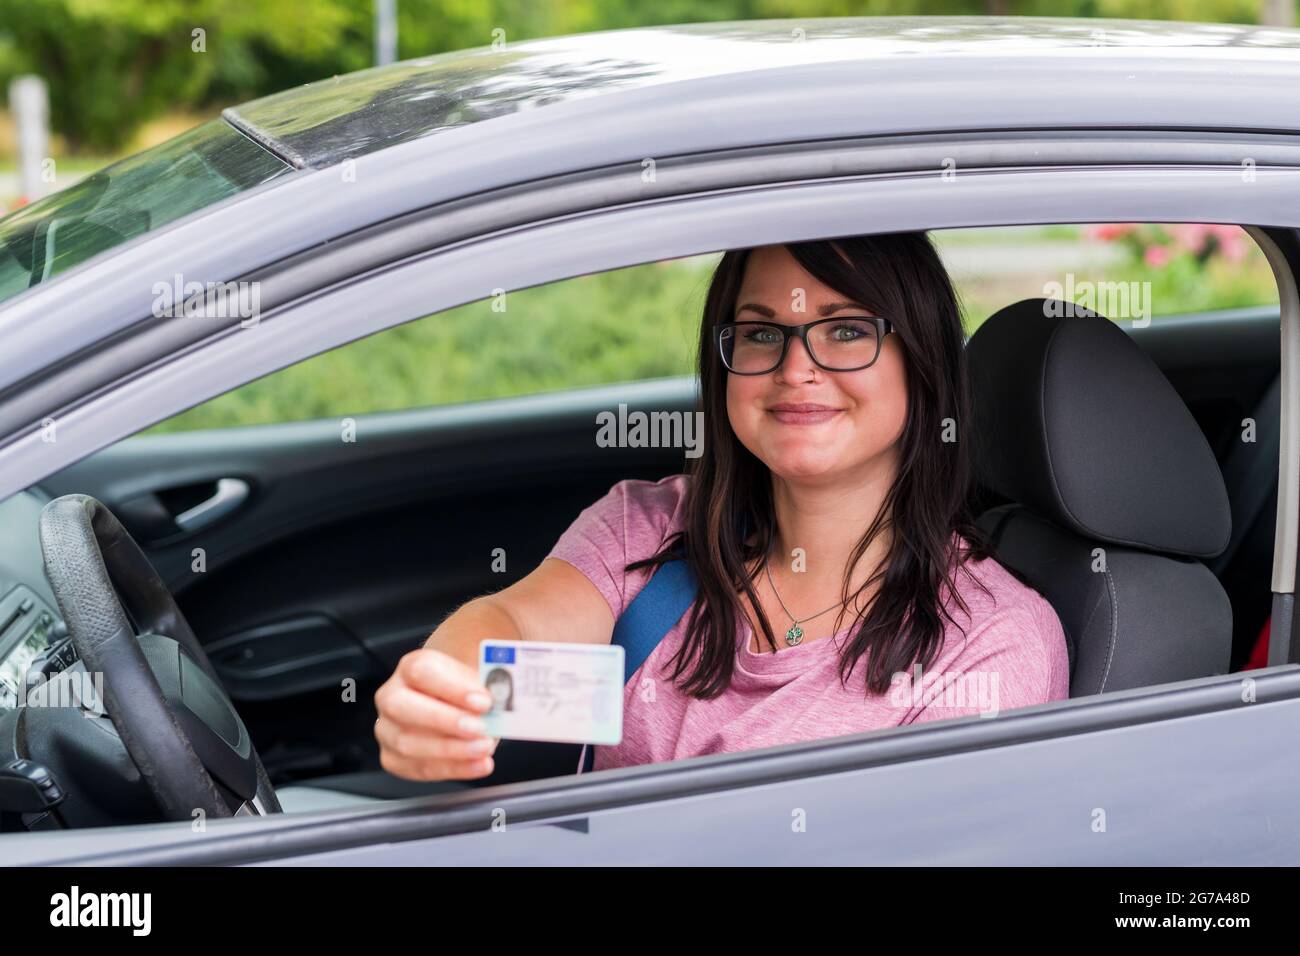 La giovane donna mostra con orgoglio la patente di guida Foto Stock